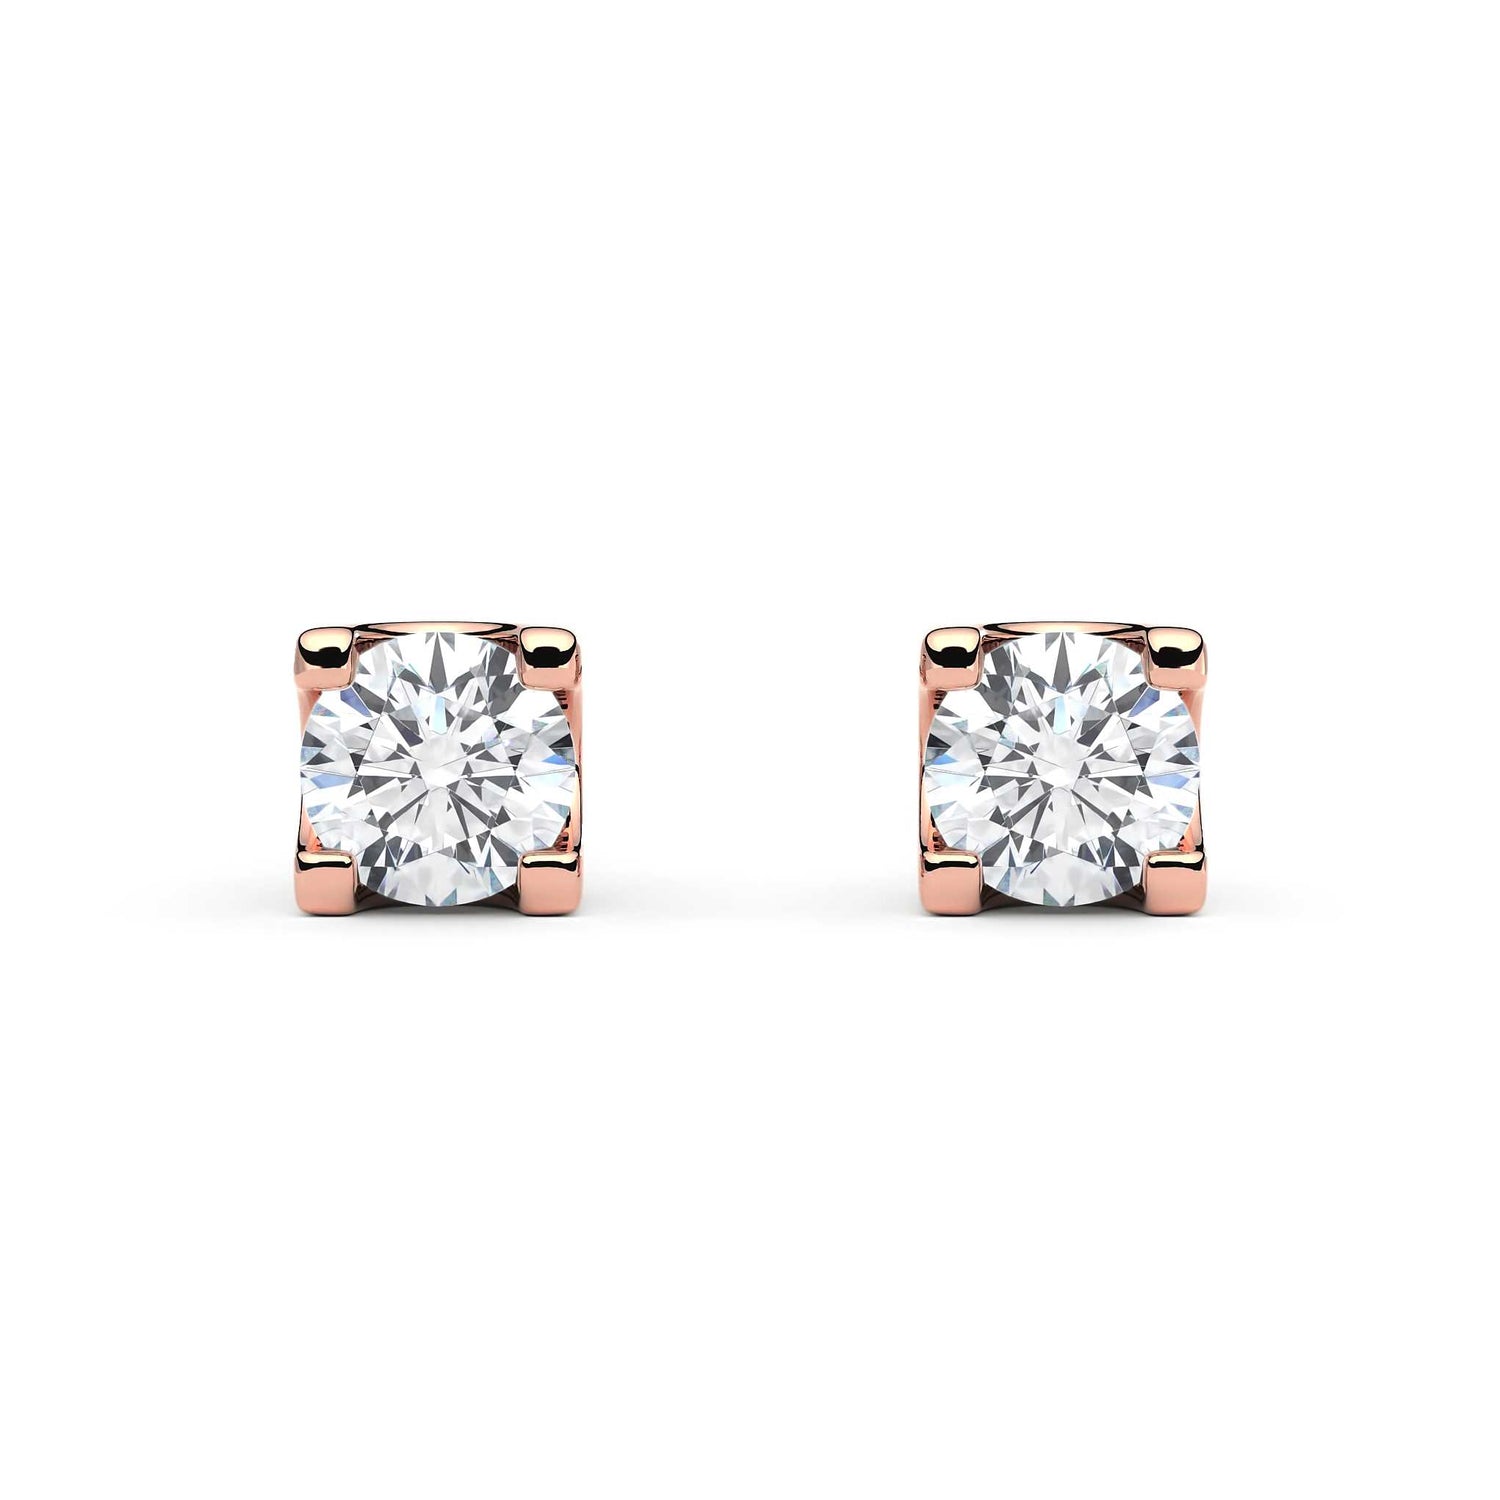 Suokko Timanttikorut -timanttikorvakorut rosakultaa, jossa istutettuna 2 timanttia. Tuotekoodi KE05621A2